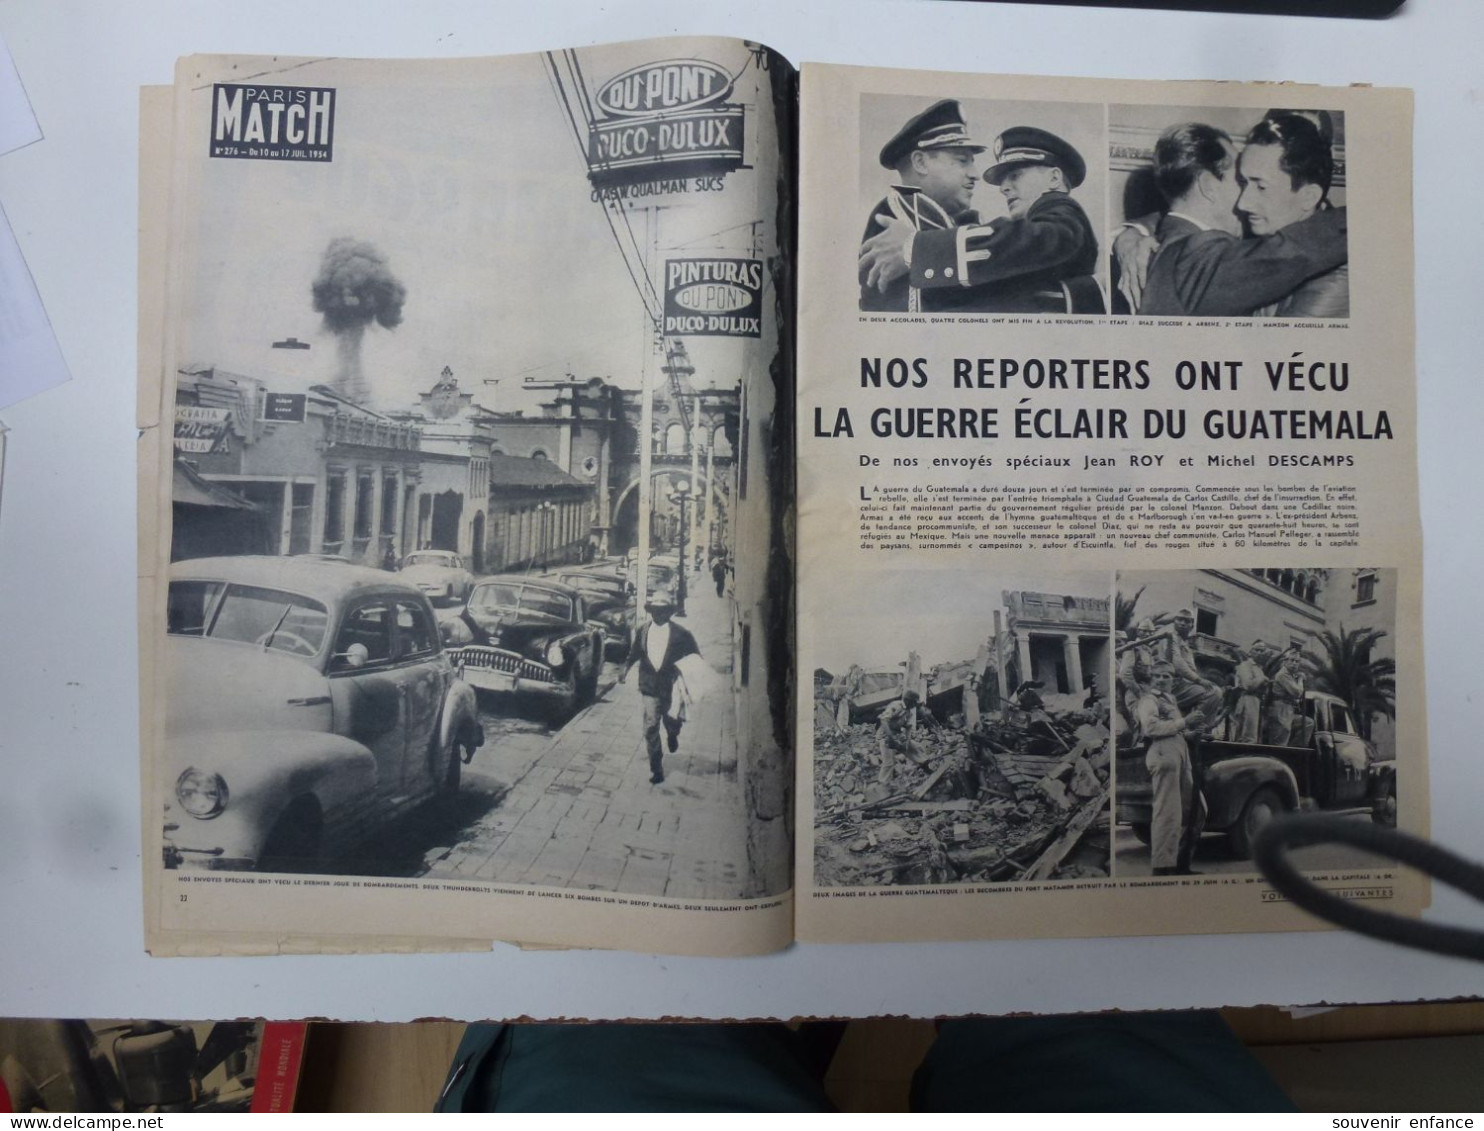 Match Paris Juillet 1954 Indochine Repli sur Hanoï Nam Dihn Tour de France Guatemala Renoir